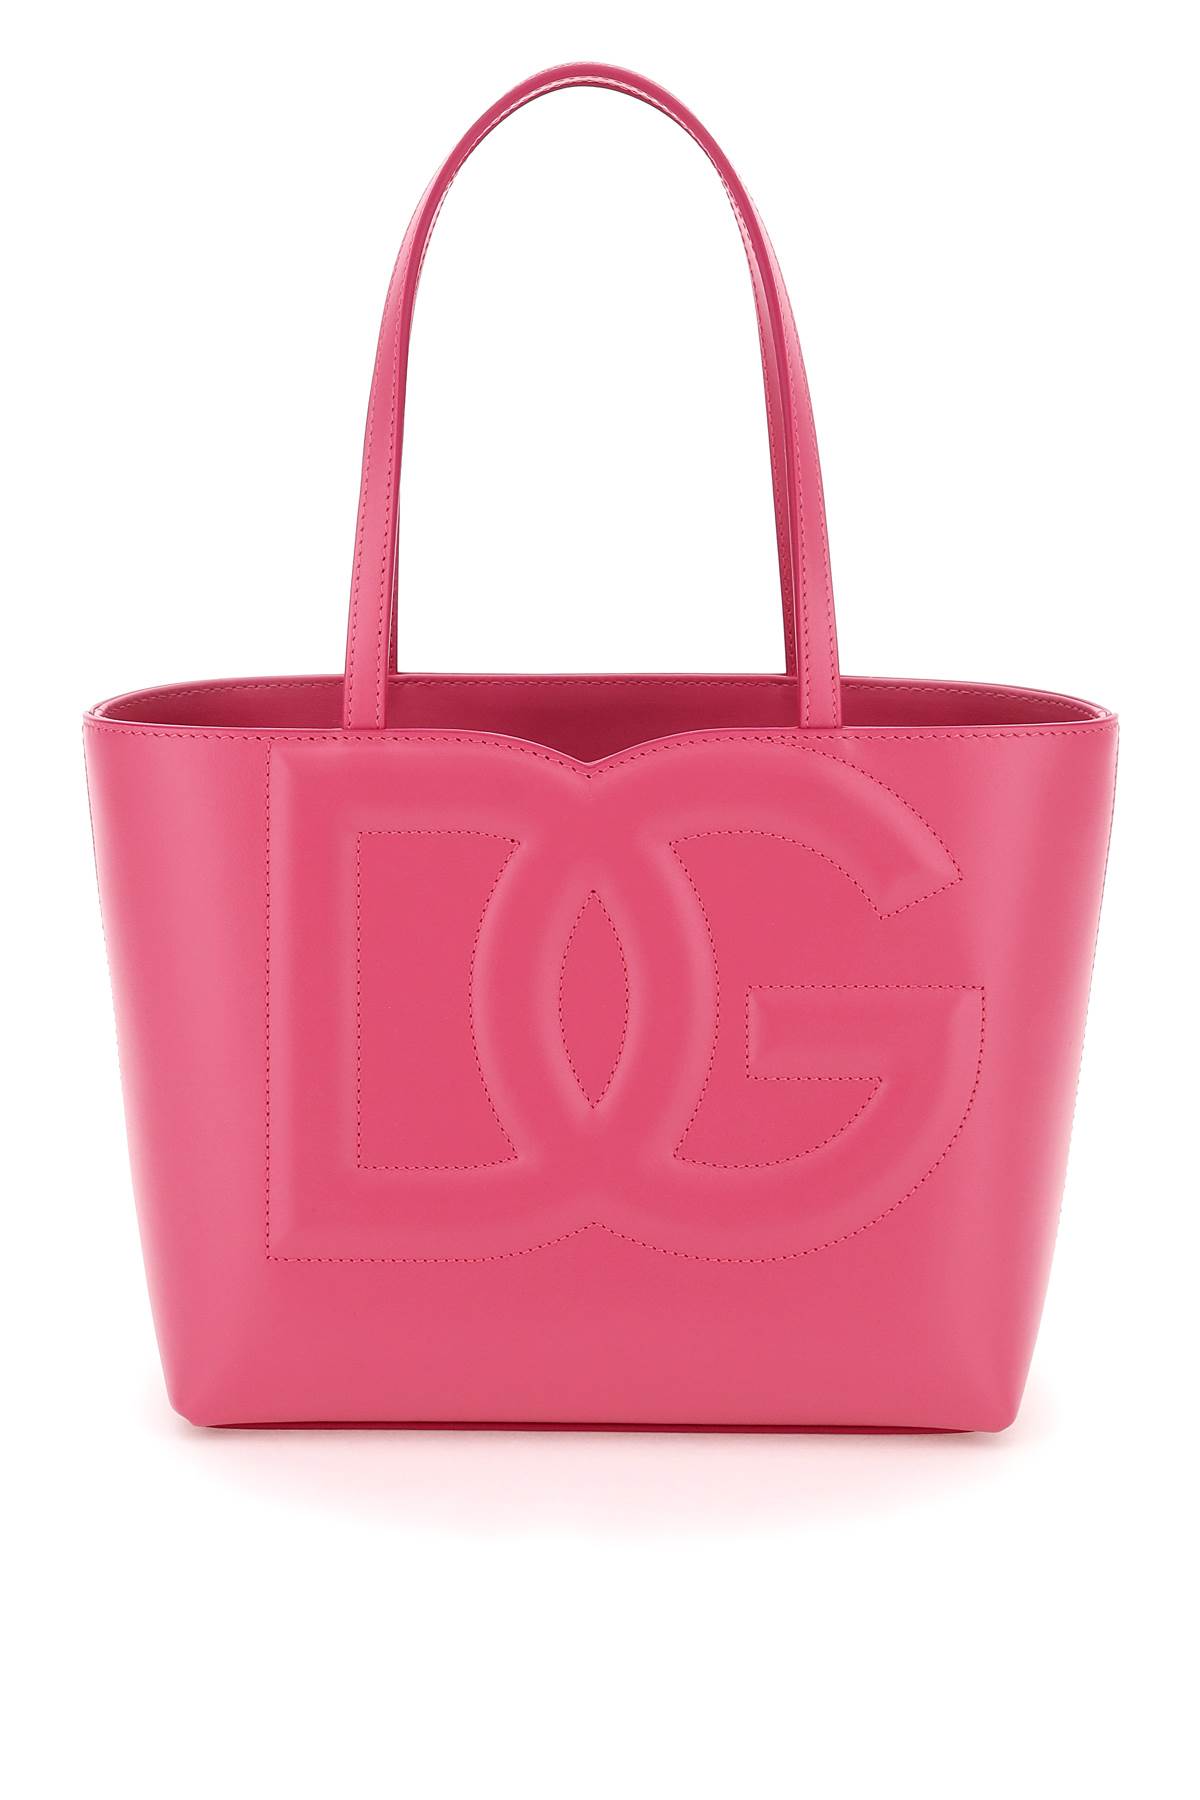 Dolce & Gabbana Shopping Bag